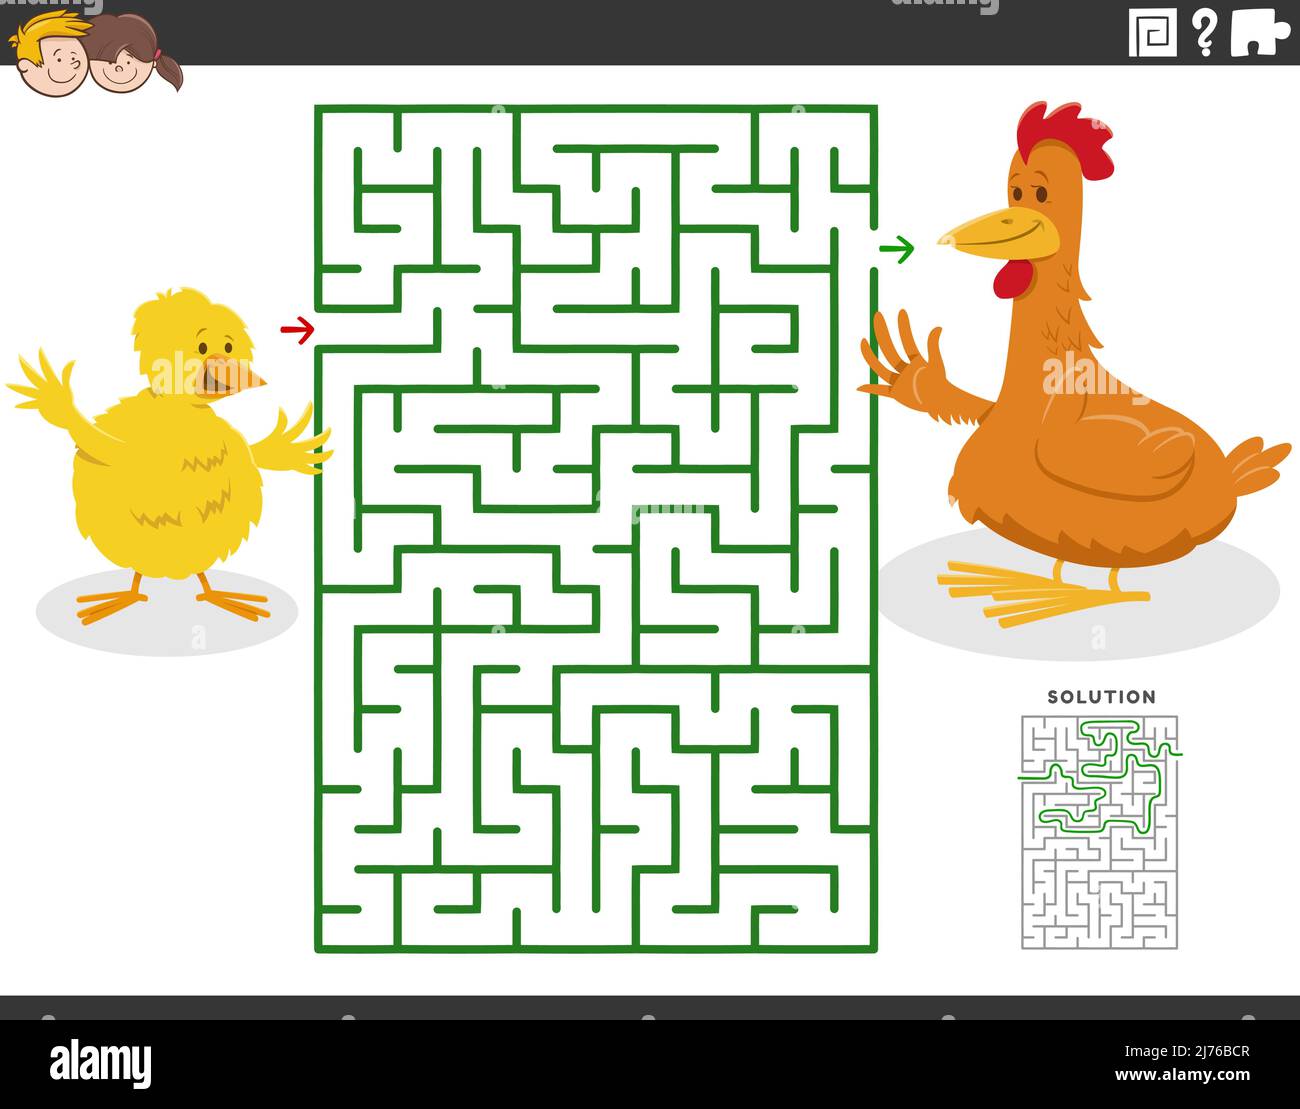 Illustration de dessin animé du jeu éducatif de puzzle de labyrinthe pour les enfants avec la mère poule et le petit poussin Illustration de Vecteur